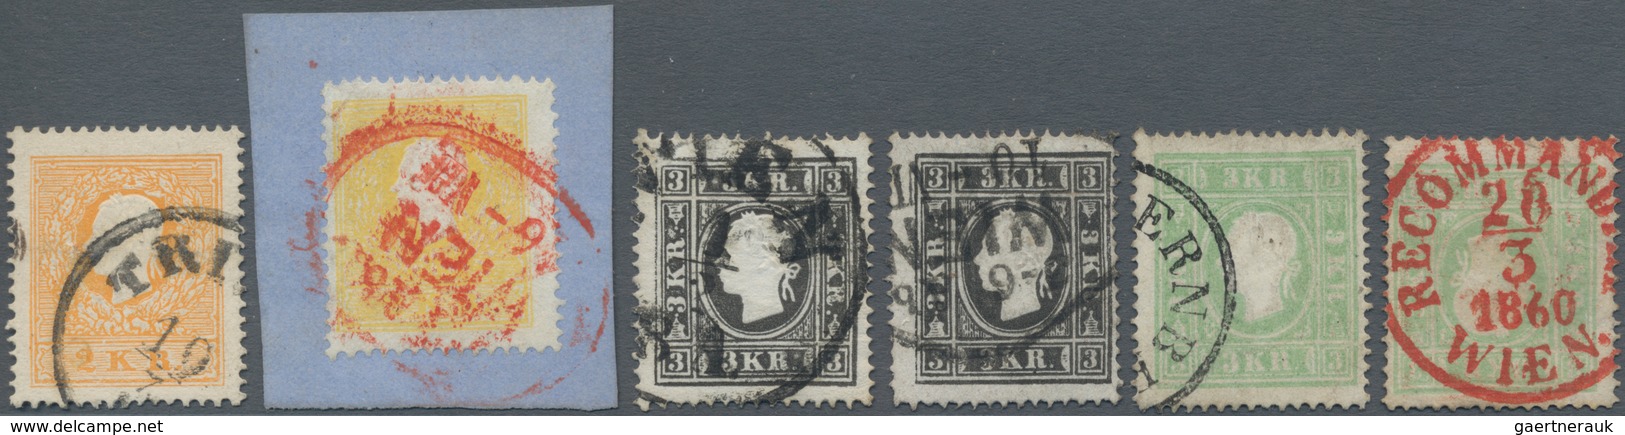 Österreich: 1858/1859, Sechs Werte In Type II Dabei 2 Kr. Gelb (Bfstk. Mit Rotstpl.) Und Orange Sowi - Gebraucht